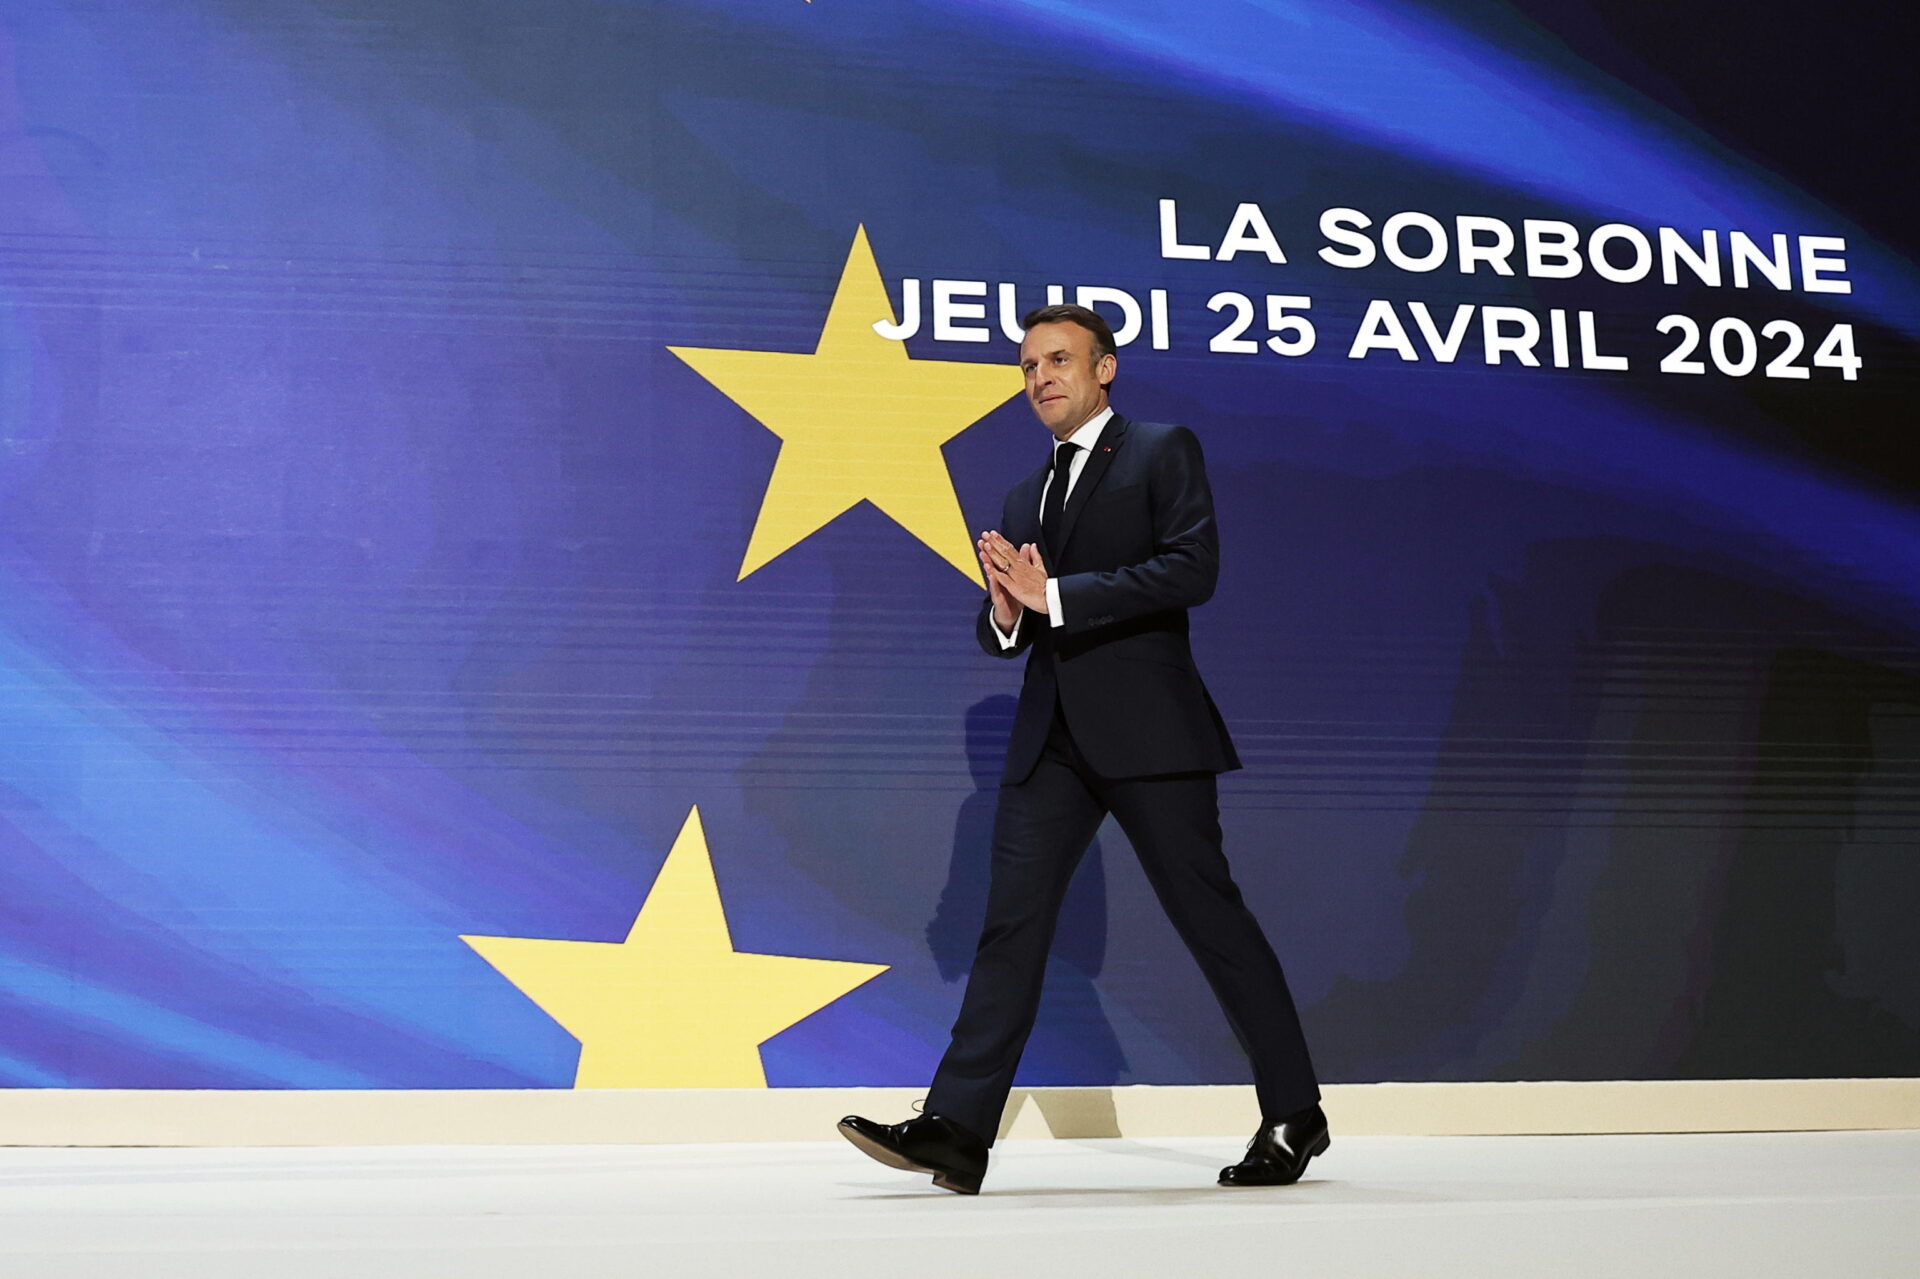 "L'Europa può morire": Macron suona la carica ma non sa dove andare